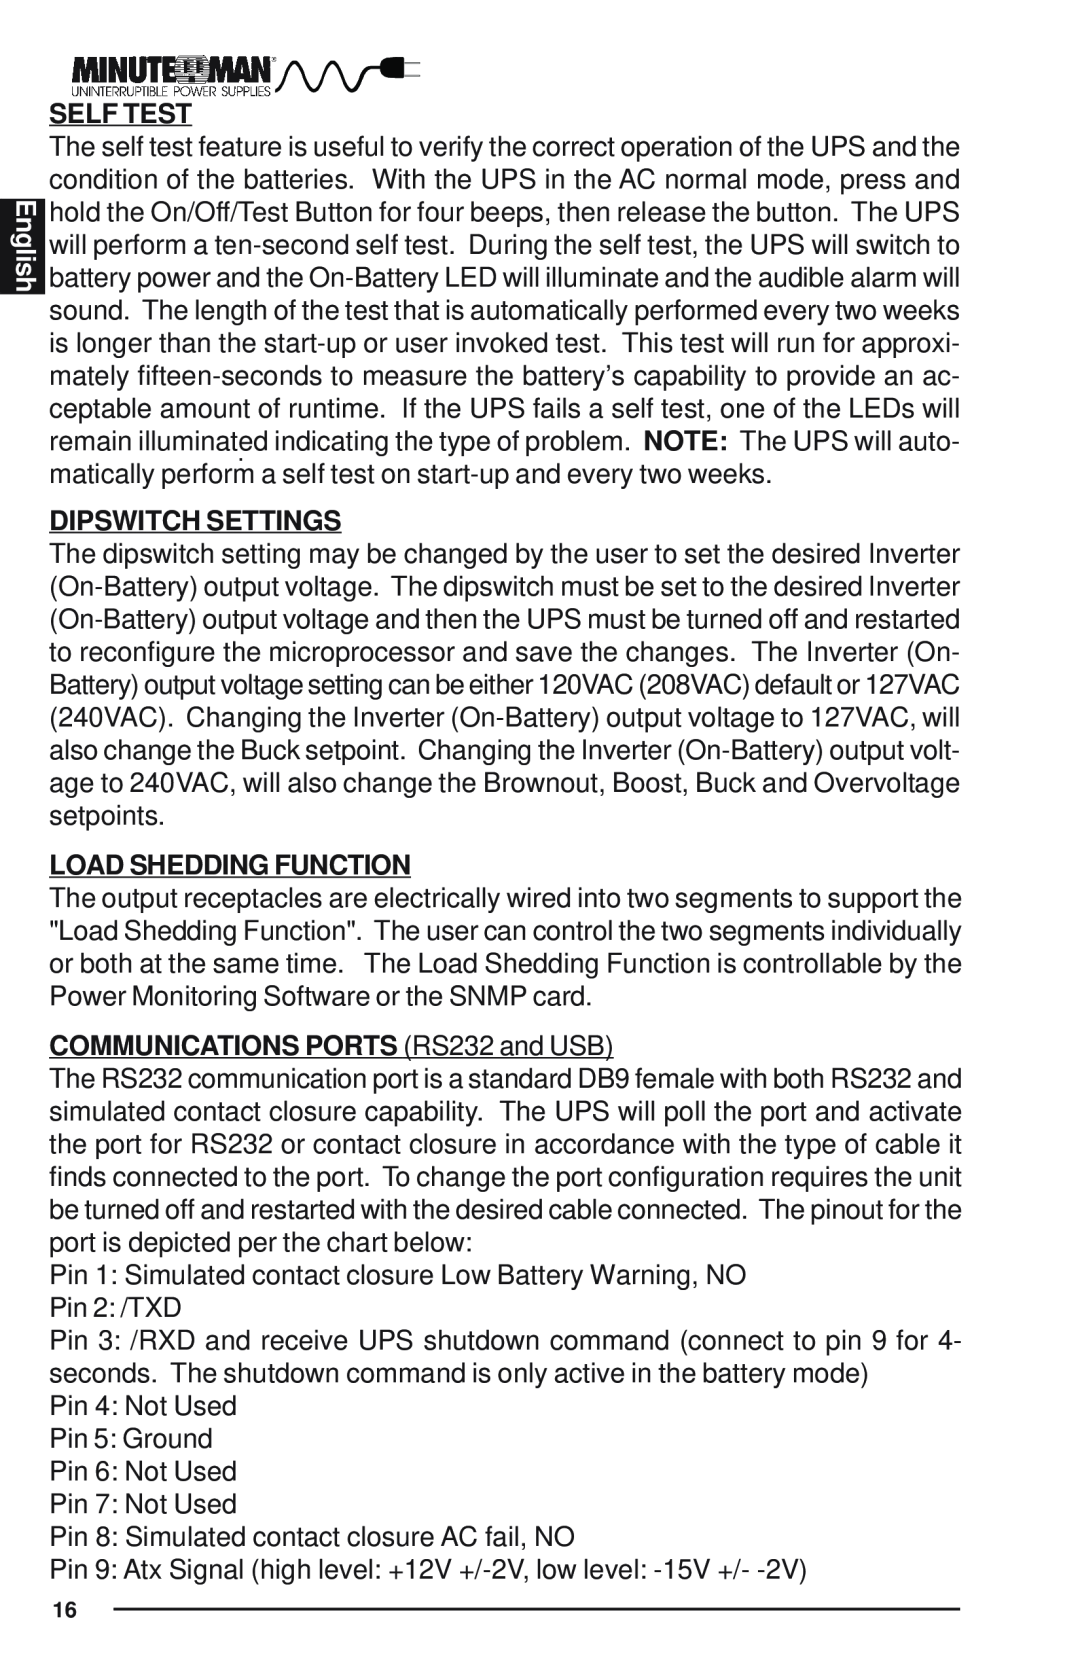 Minuteman UPS Enterprise Plus Series user manual English, Self Test, Dipswitch Settings, Load Shedding Function 